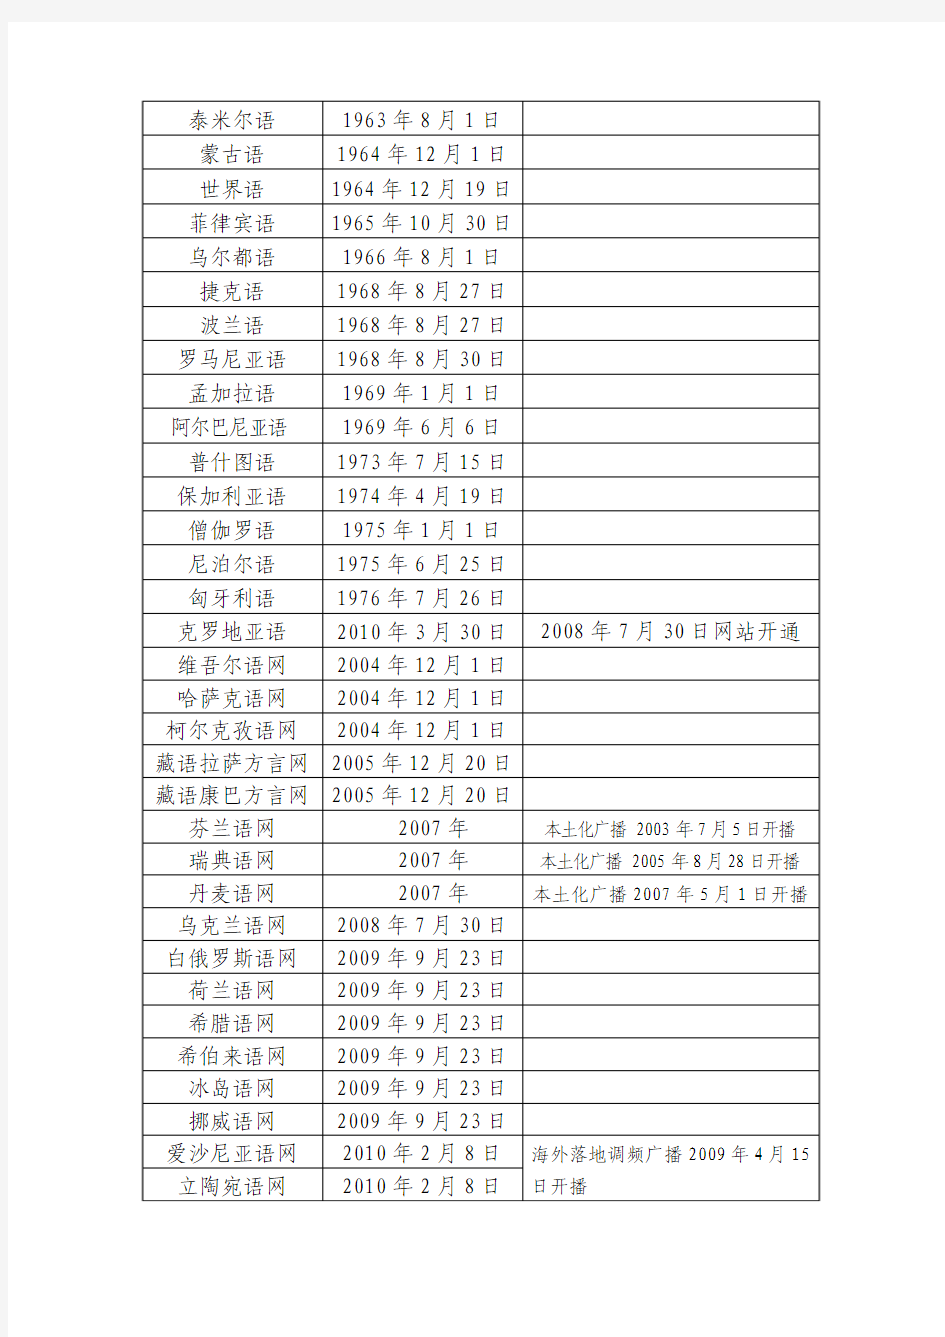 中国国际广播电台各语种开播时间表